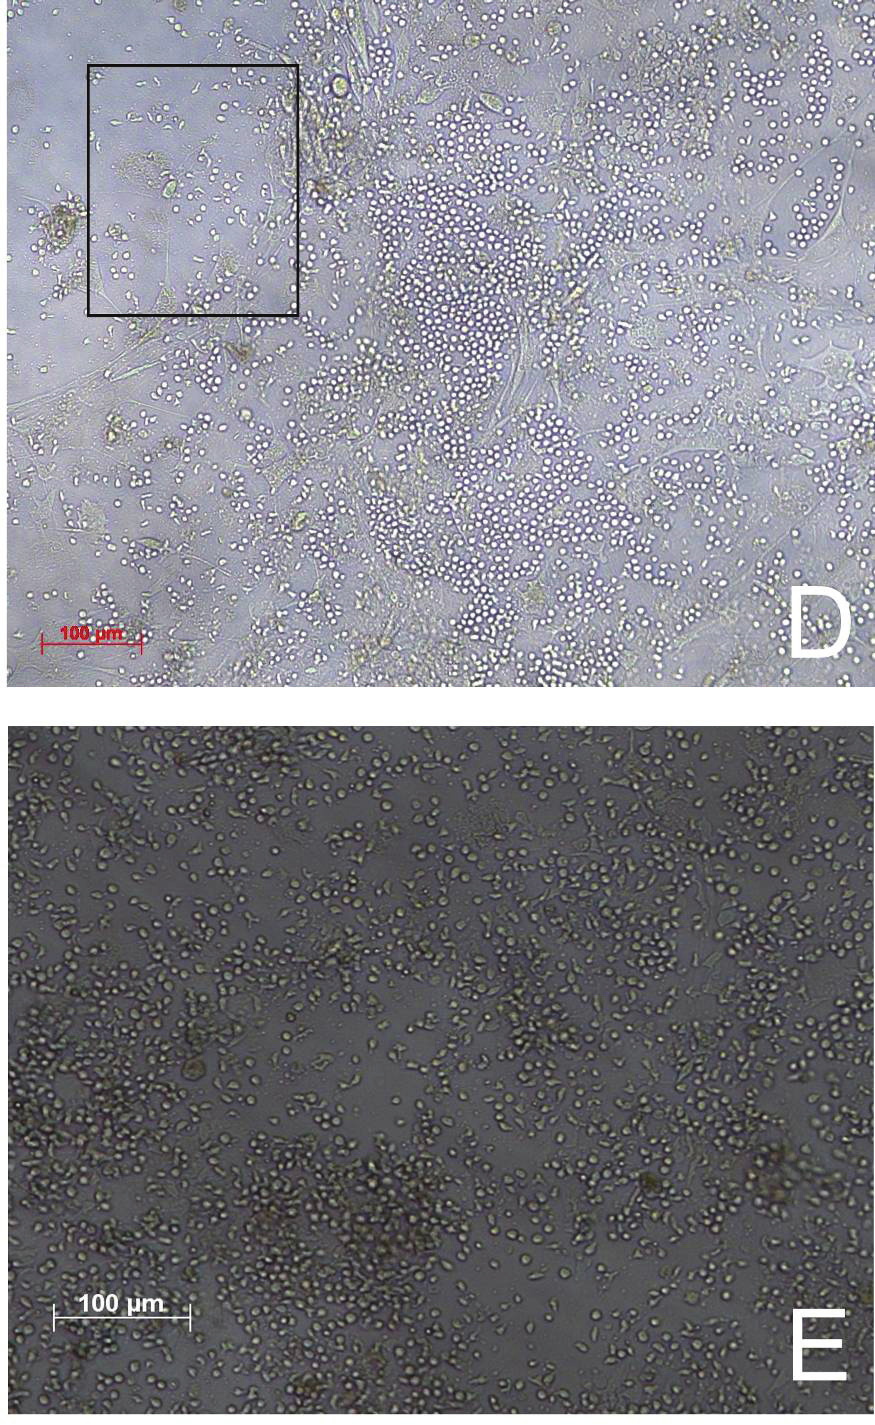 Ergebnisse B (D) Mikroskopische Aufnahme eines CB an d21.es wurde eine andere Stelle der in vitro Kultivierung abgebildet.